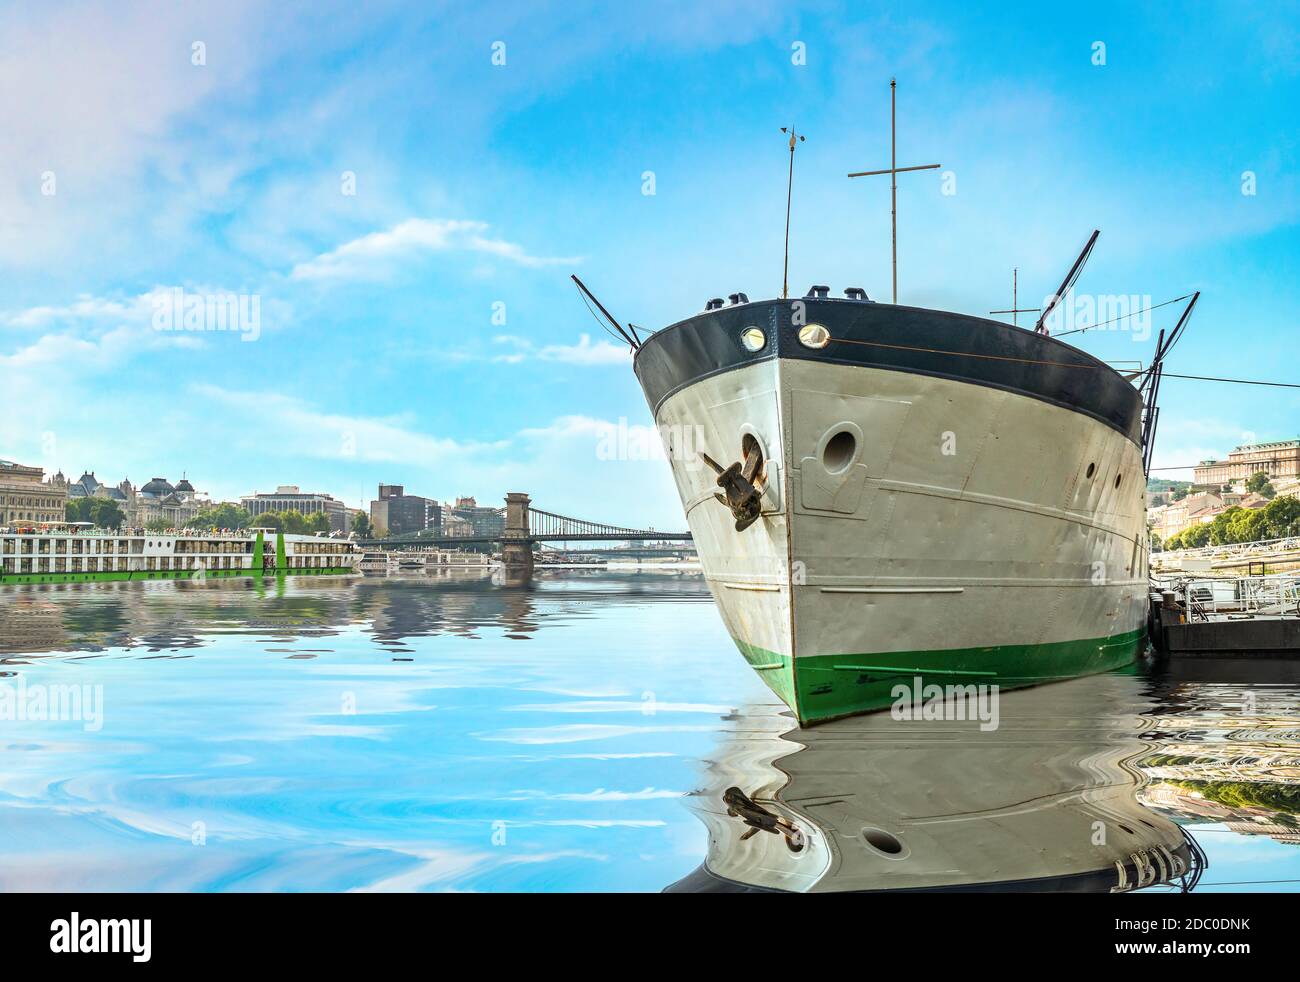 Gran barco amarrado en el puerto de Budapest Foto de stock